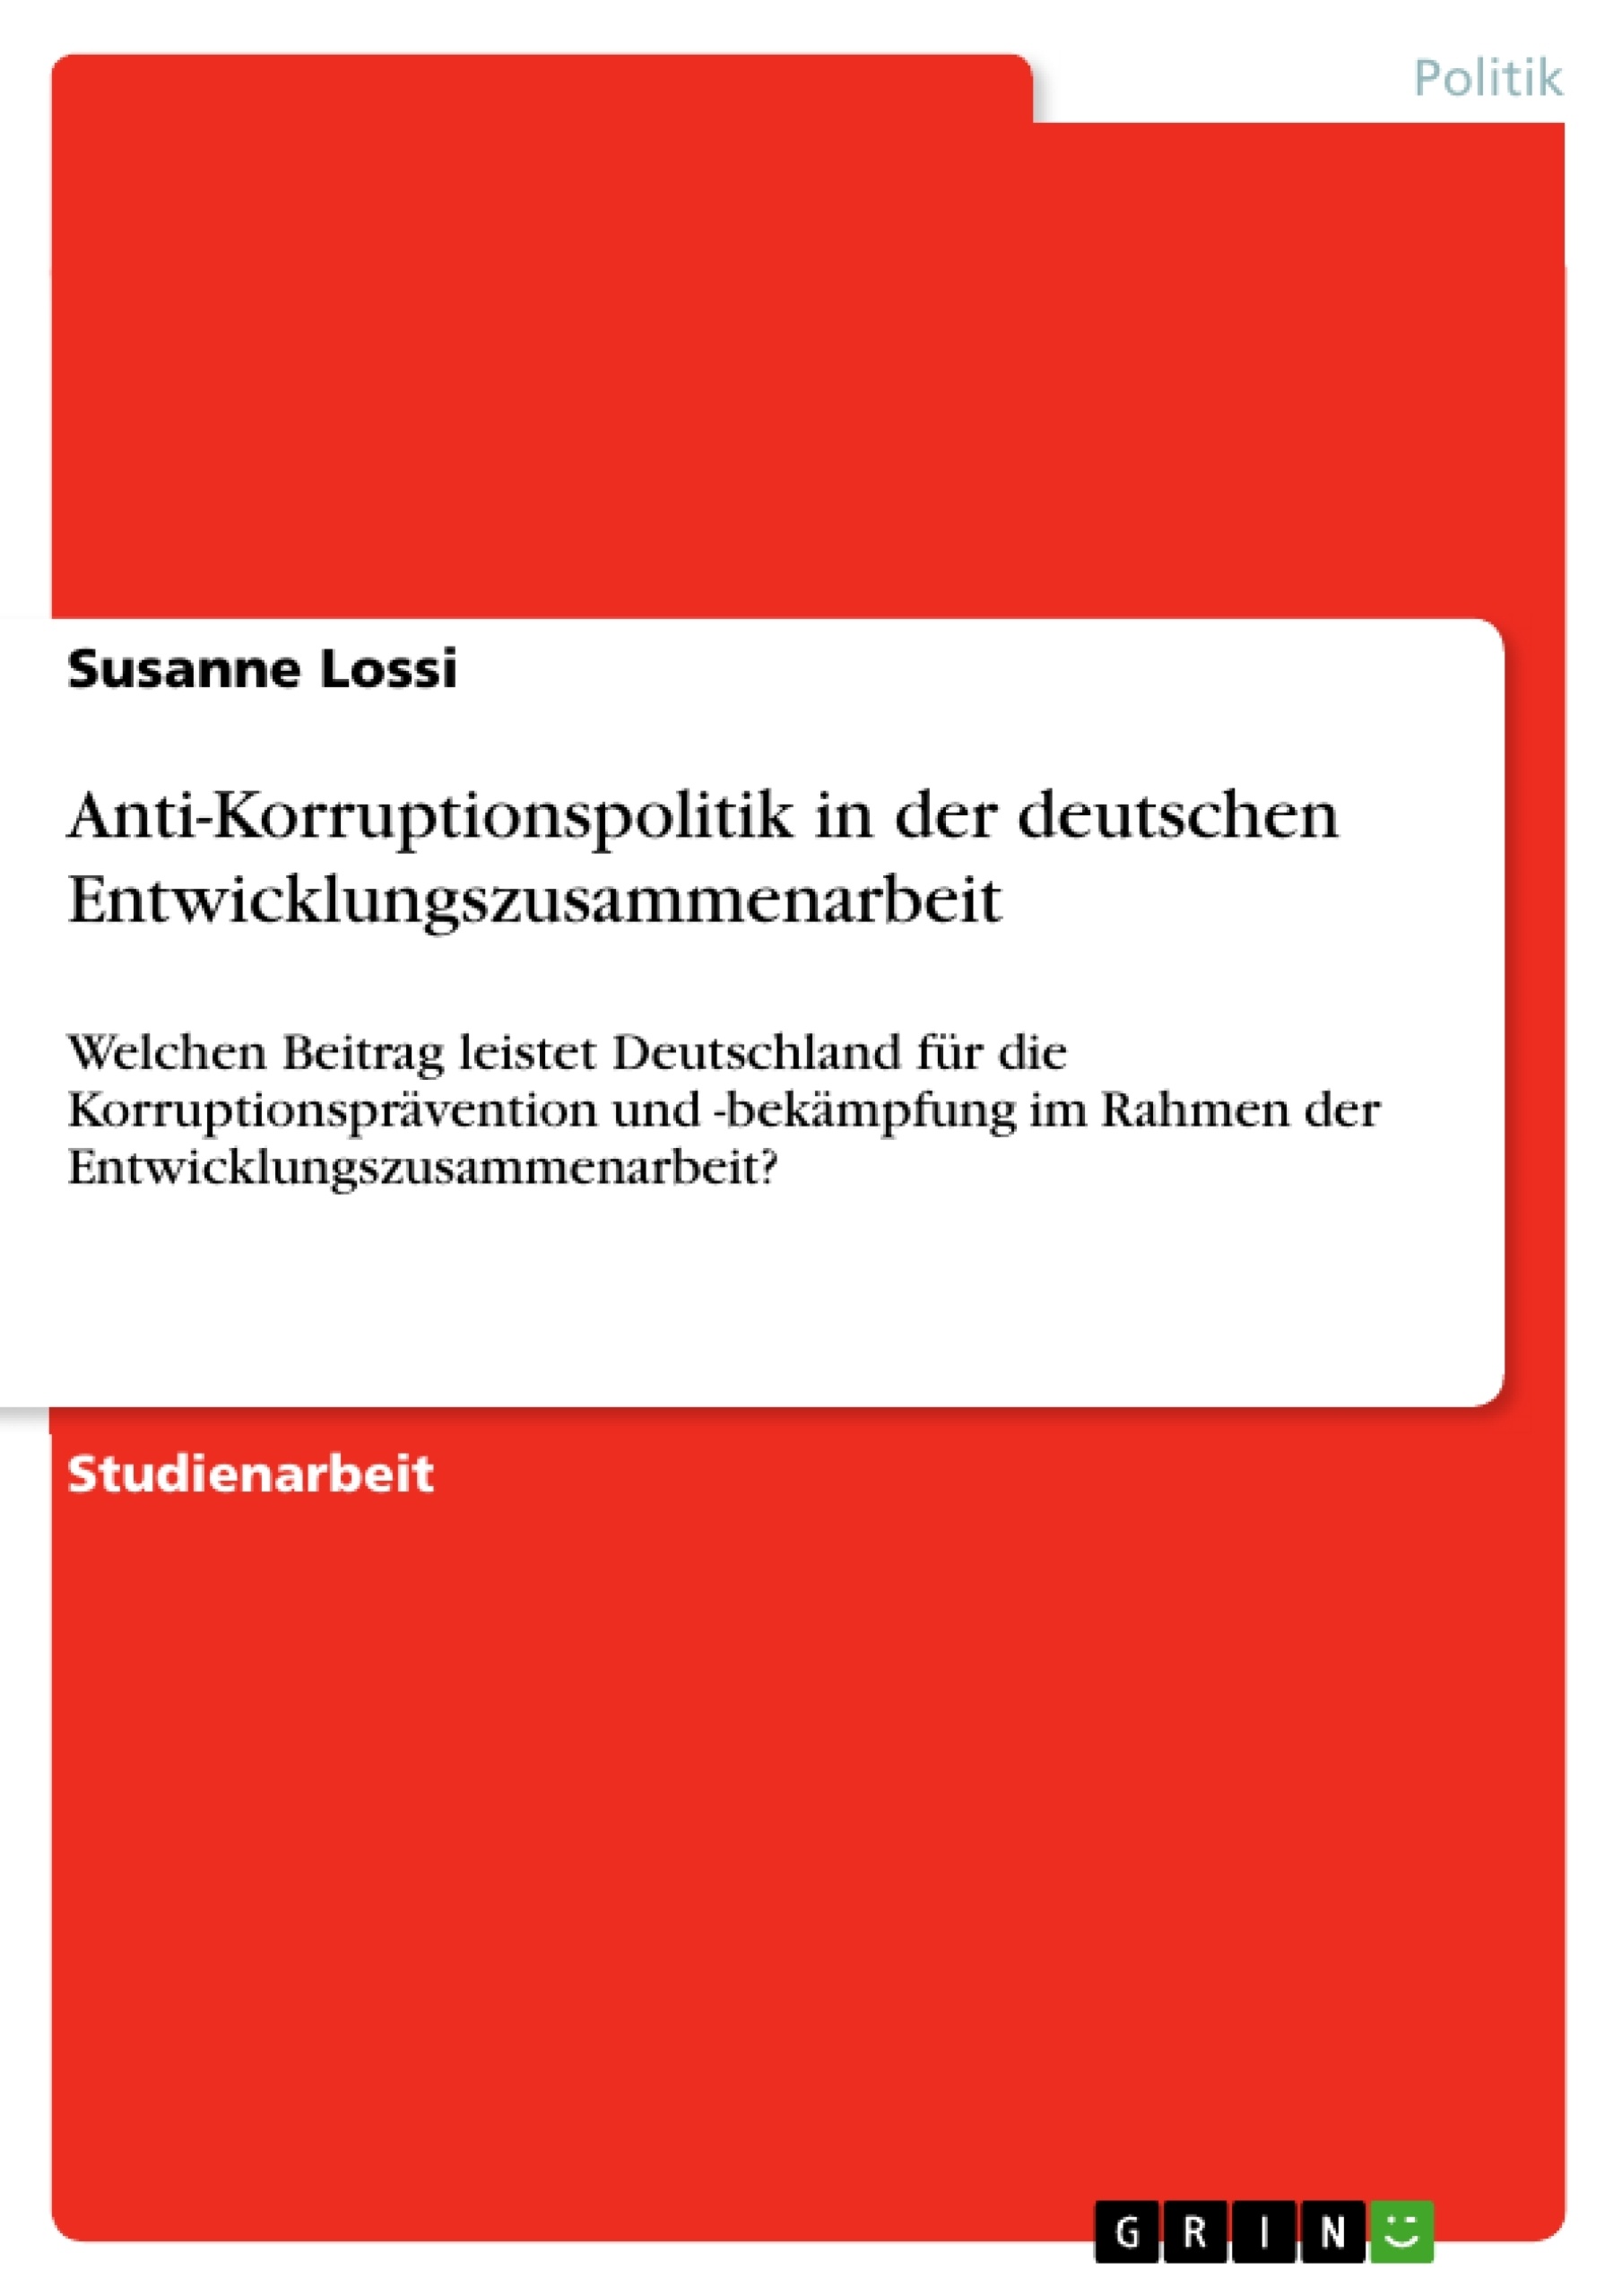 Título: Anti-Korruptionspolitik in der deutschen Entwicklungszusammenarbeit